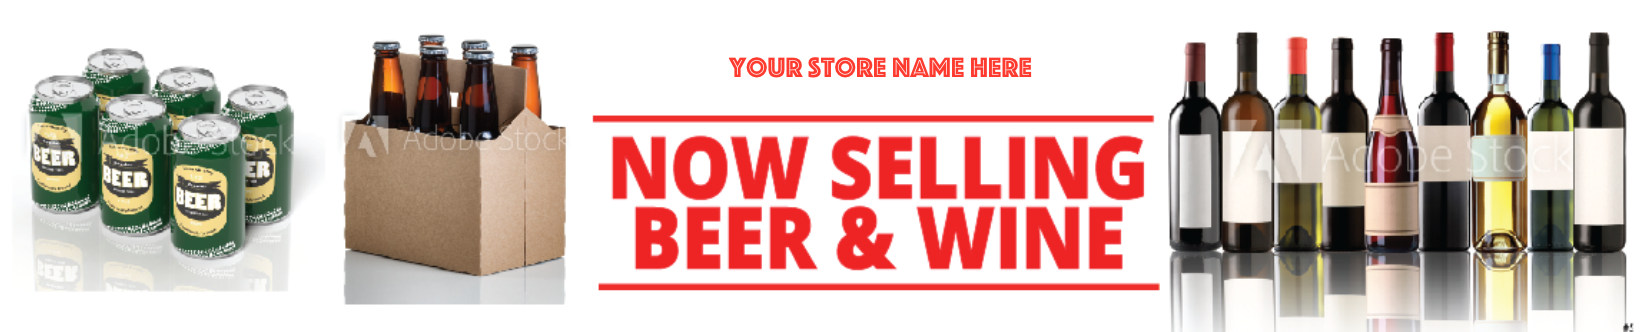 Now Selling Wine & Beer Custom Printed Easel Sign